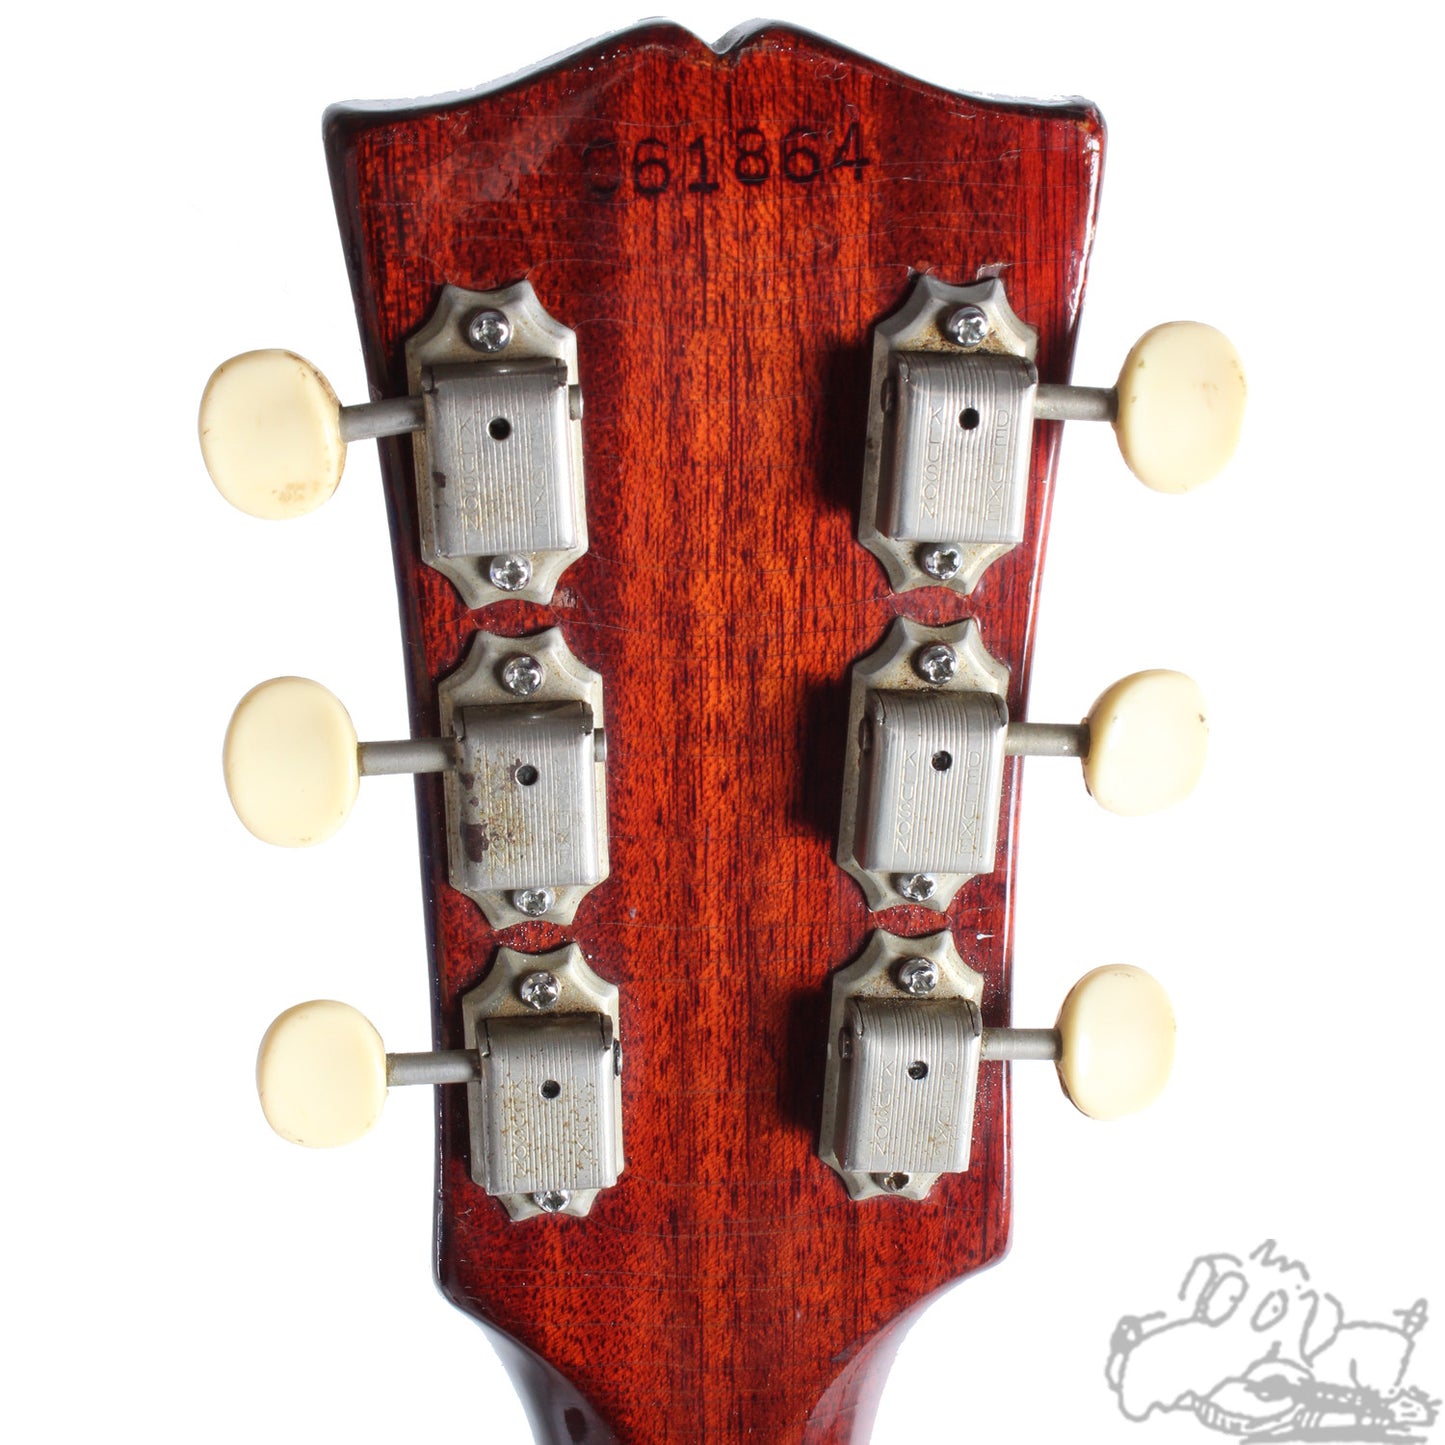 1967 Gibson ES-330